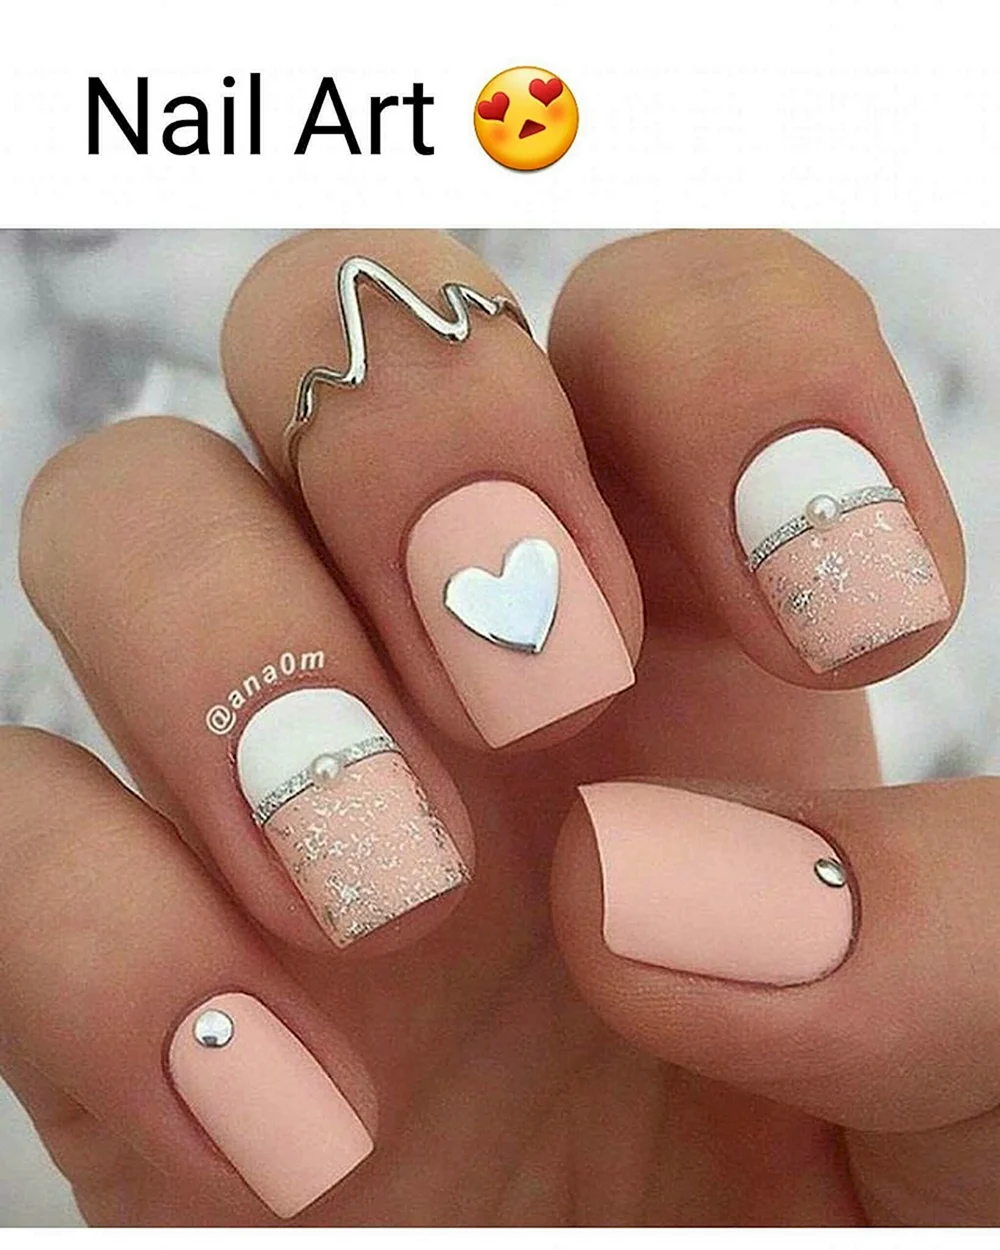 Nail Art ideas